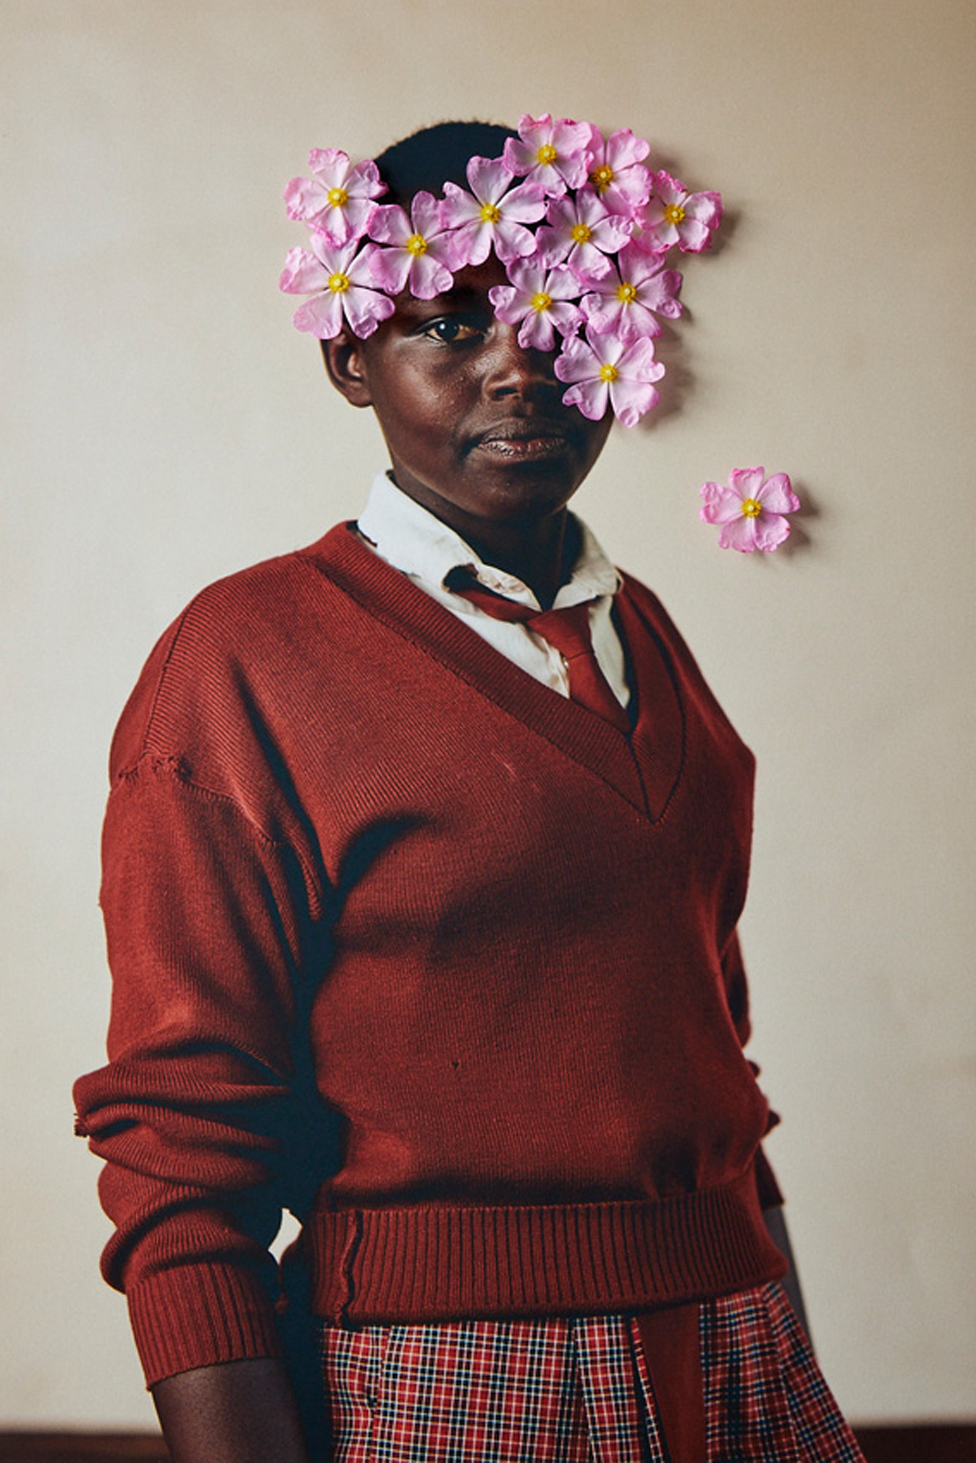 Un retrato de una niña keniana con flores aplicadas a la fotografía.